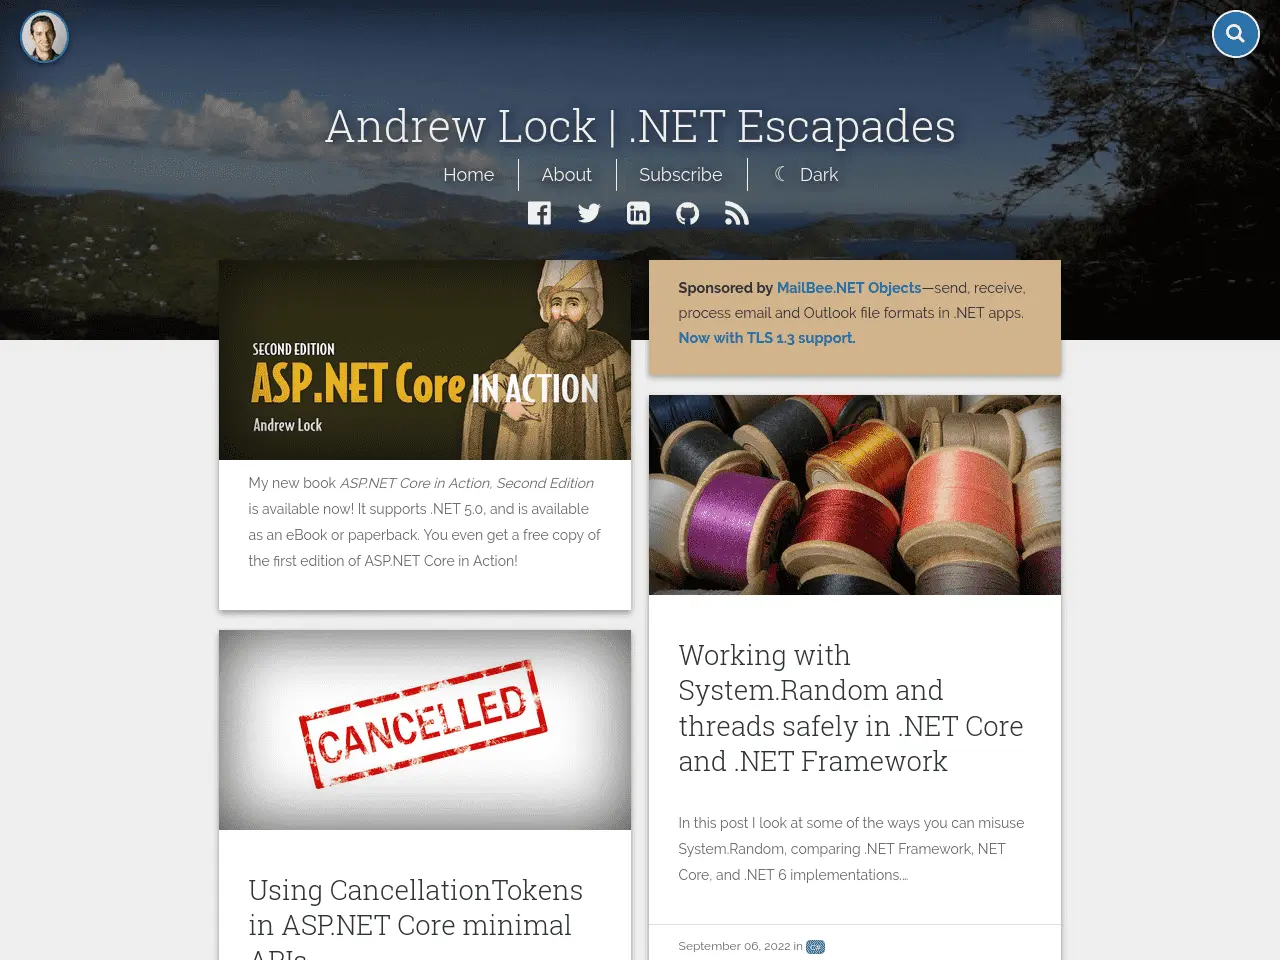 Andrew Lock's blog